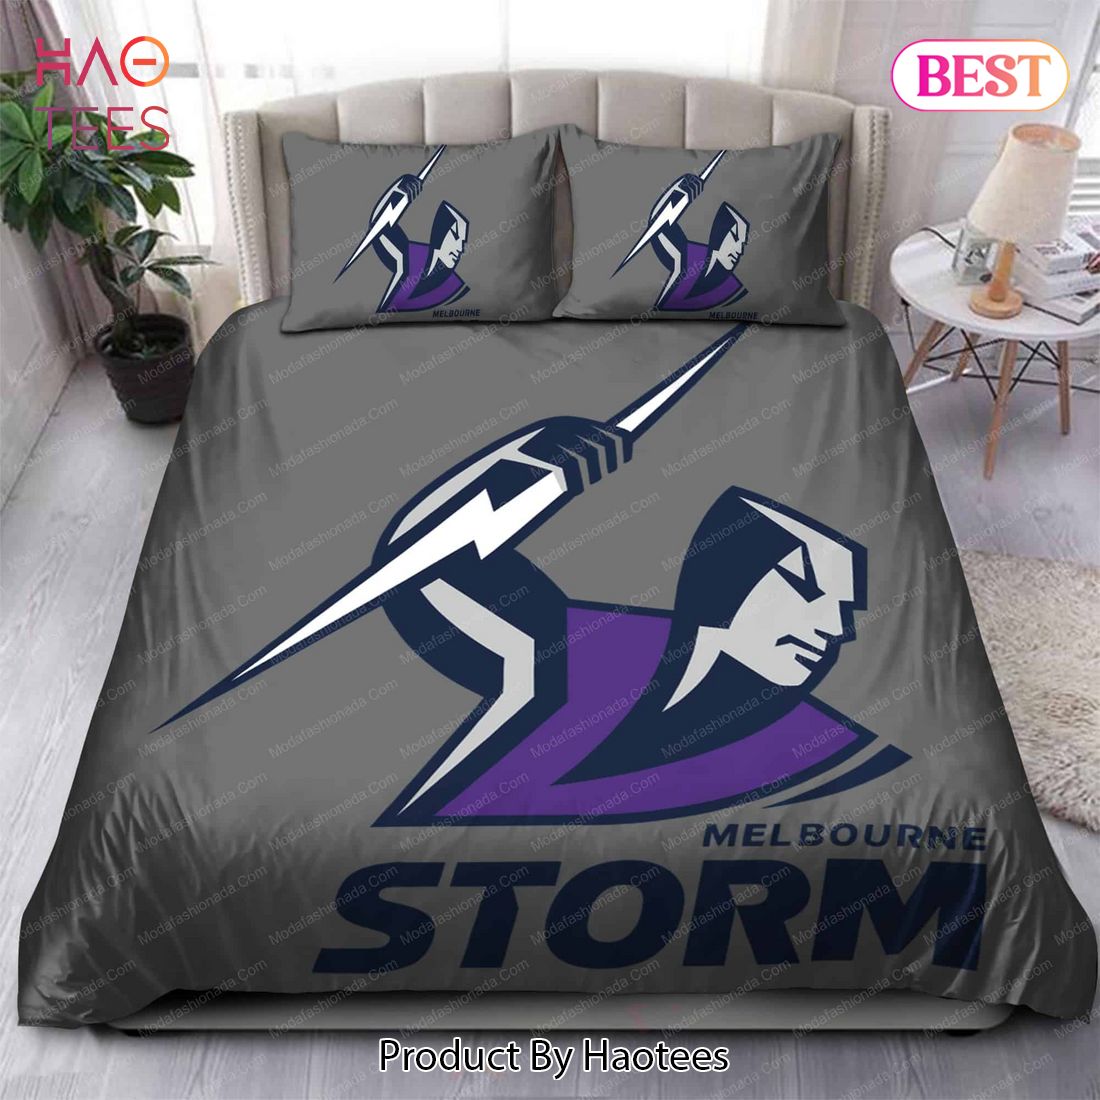 Buy Melbourne Storm Logo Bedding Sets Bed Sets, Bedroom Sets, Comforter Sets, Duvet Cover, Bedspread